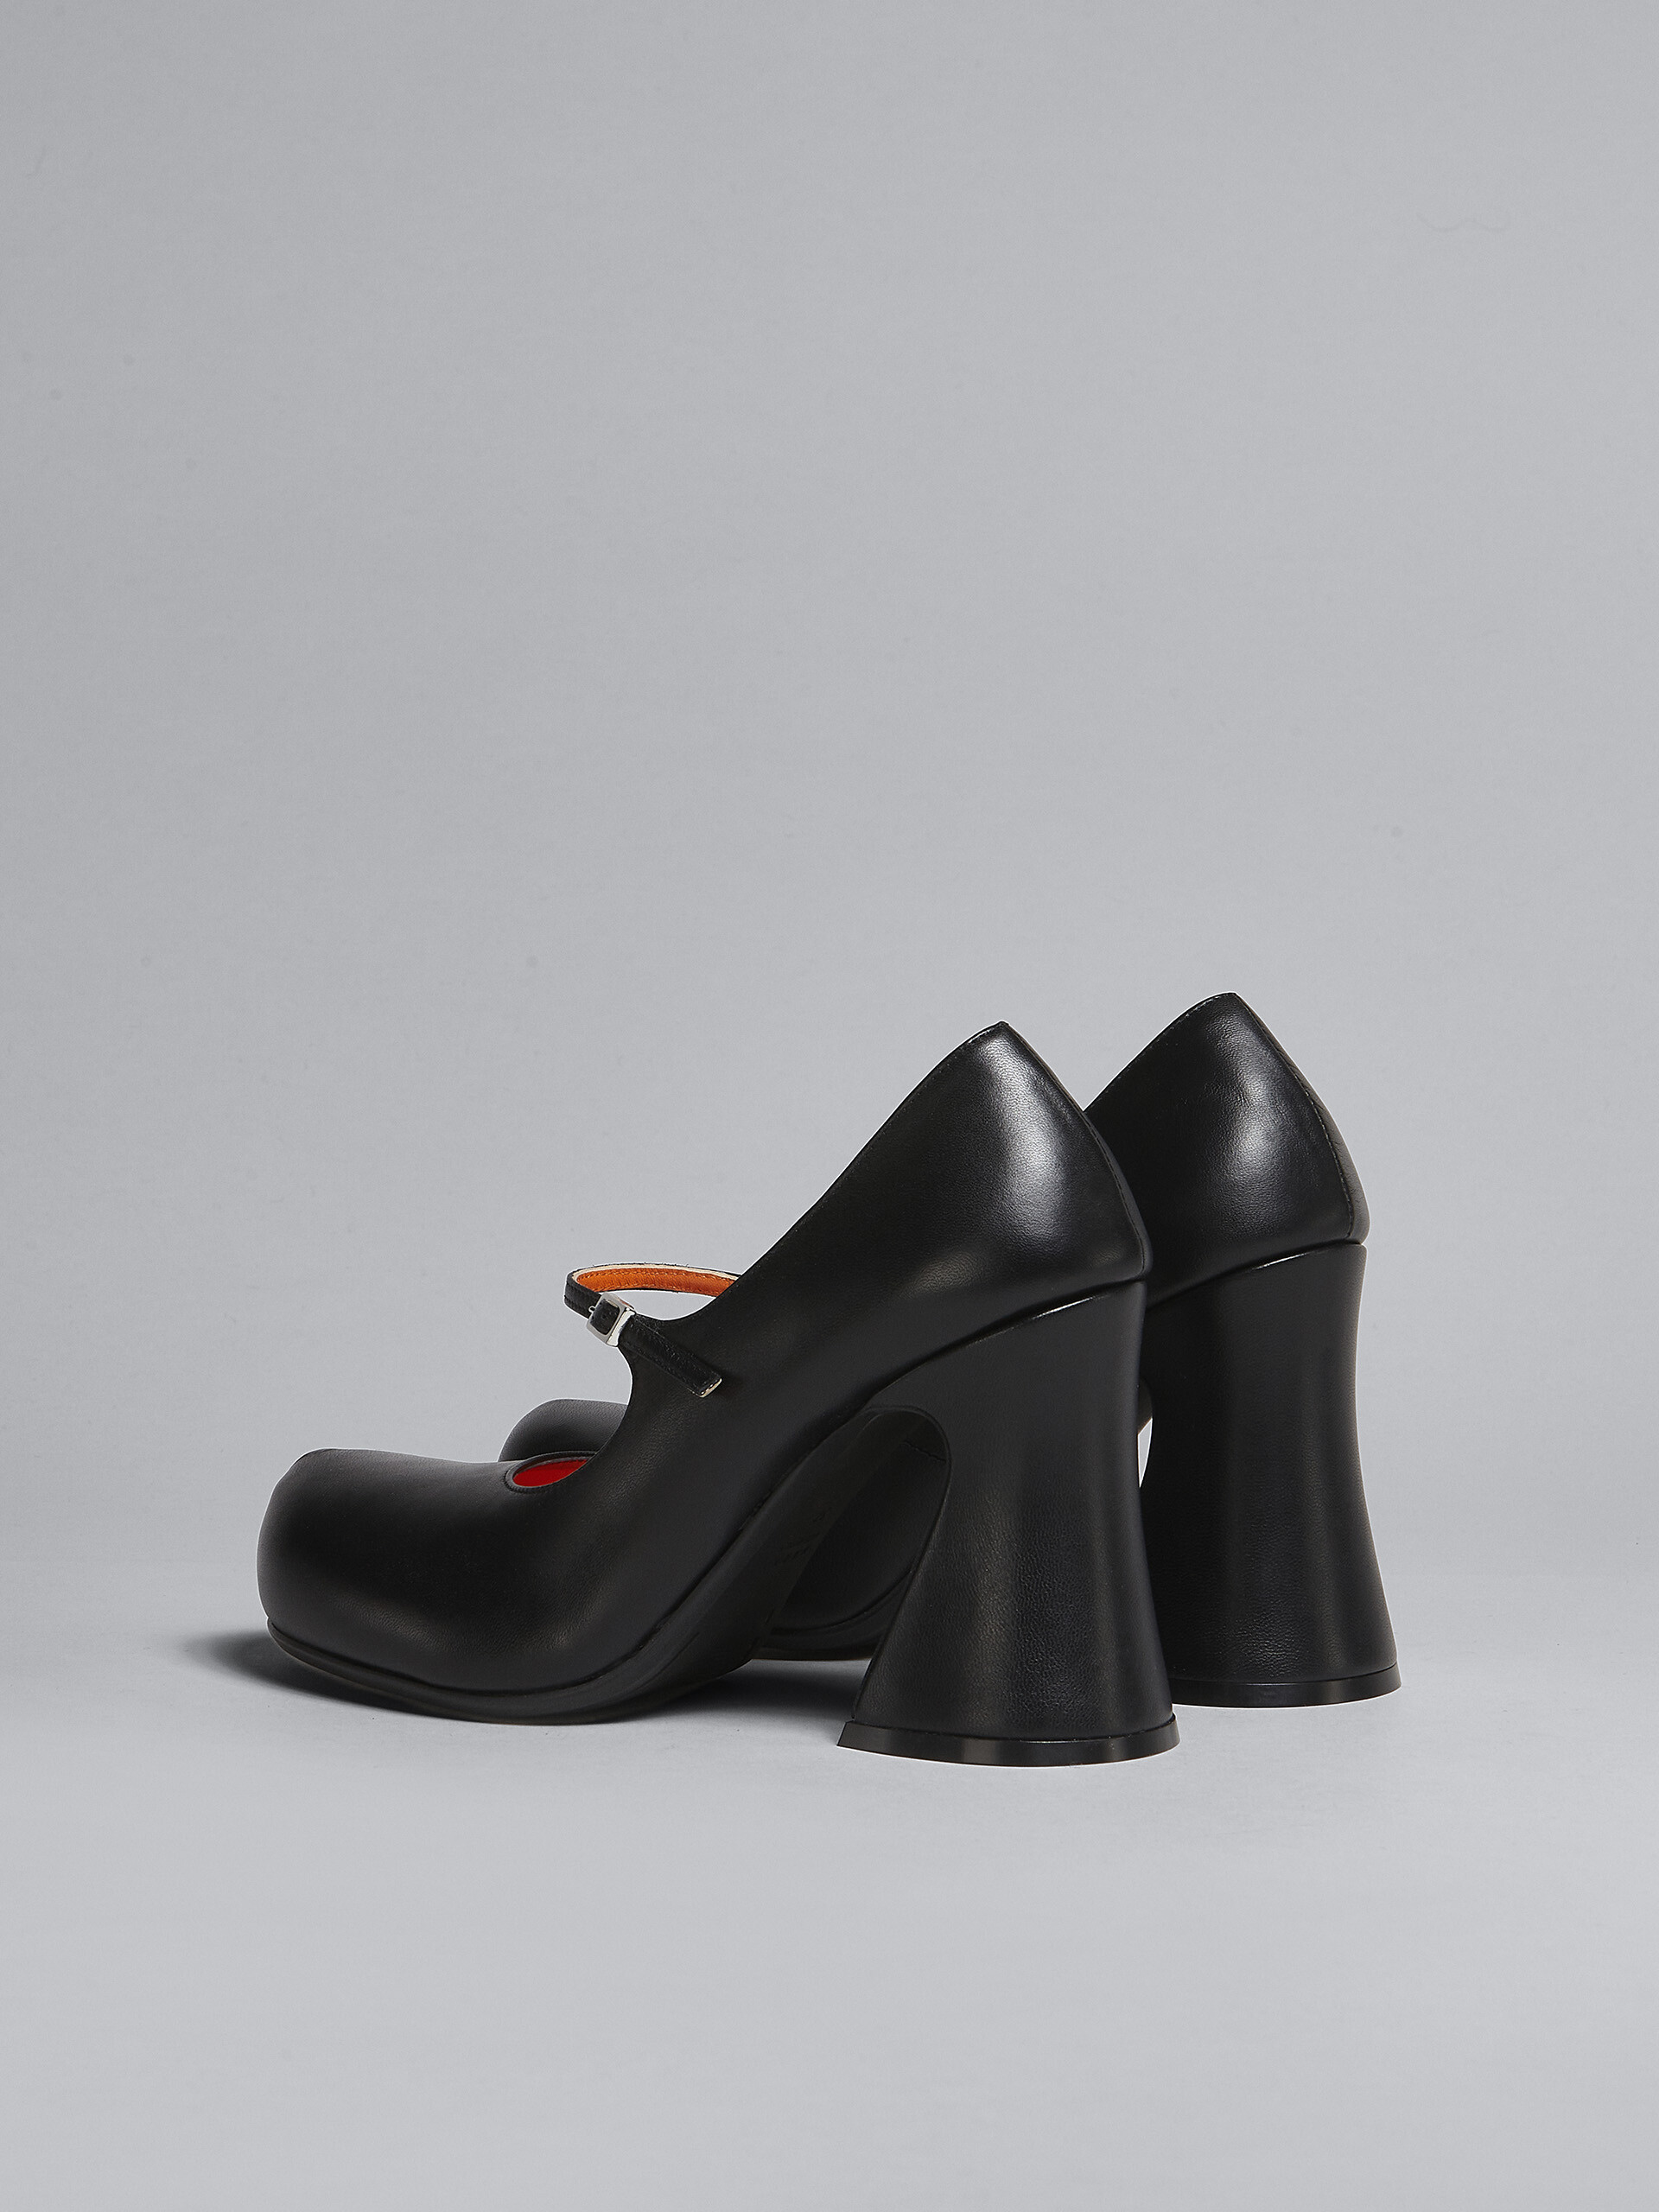 Zapatos de salón Mary Jane de piel negra - Salones - Image 3